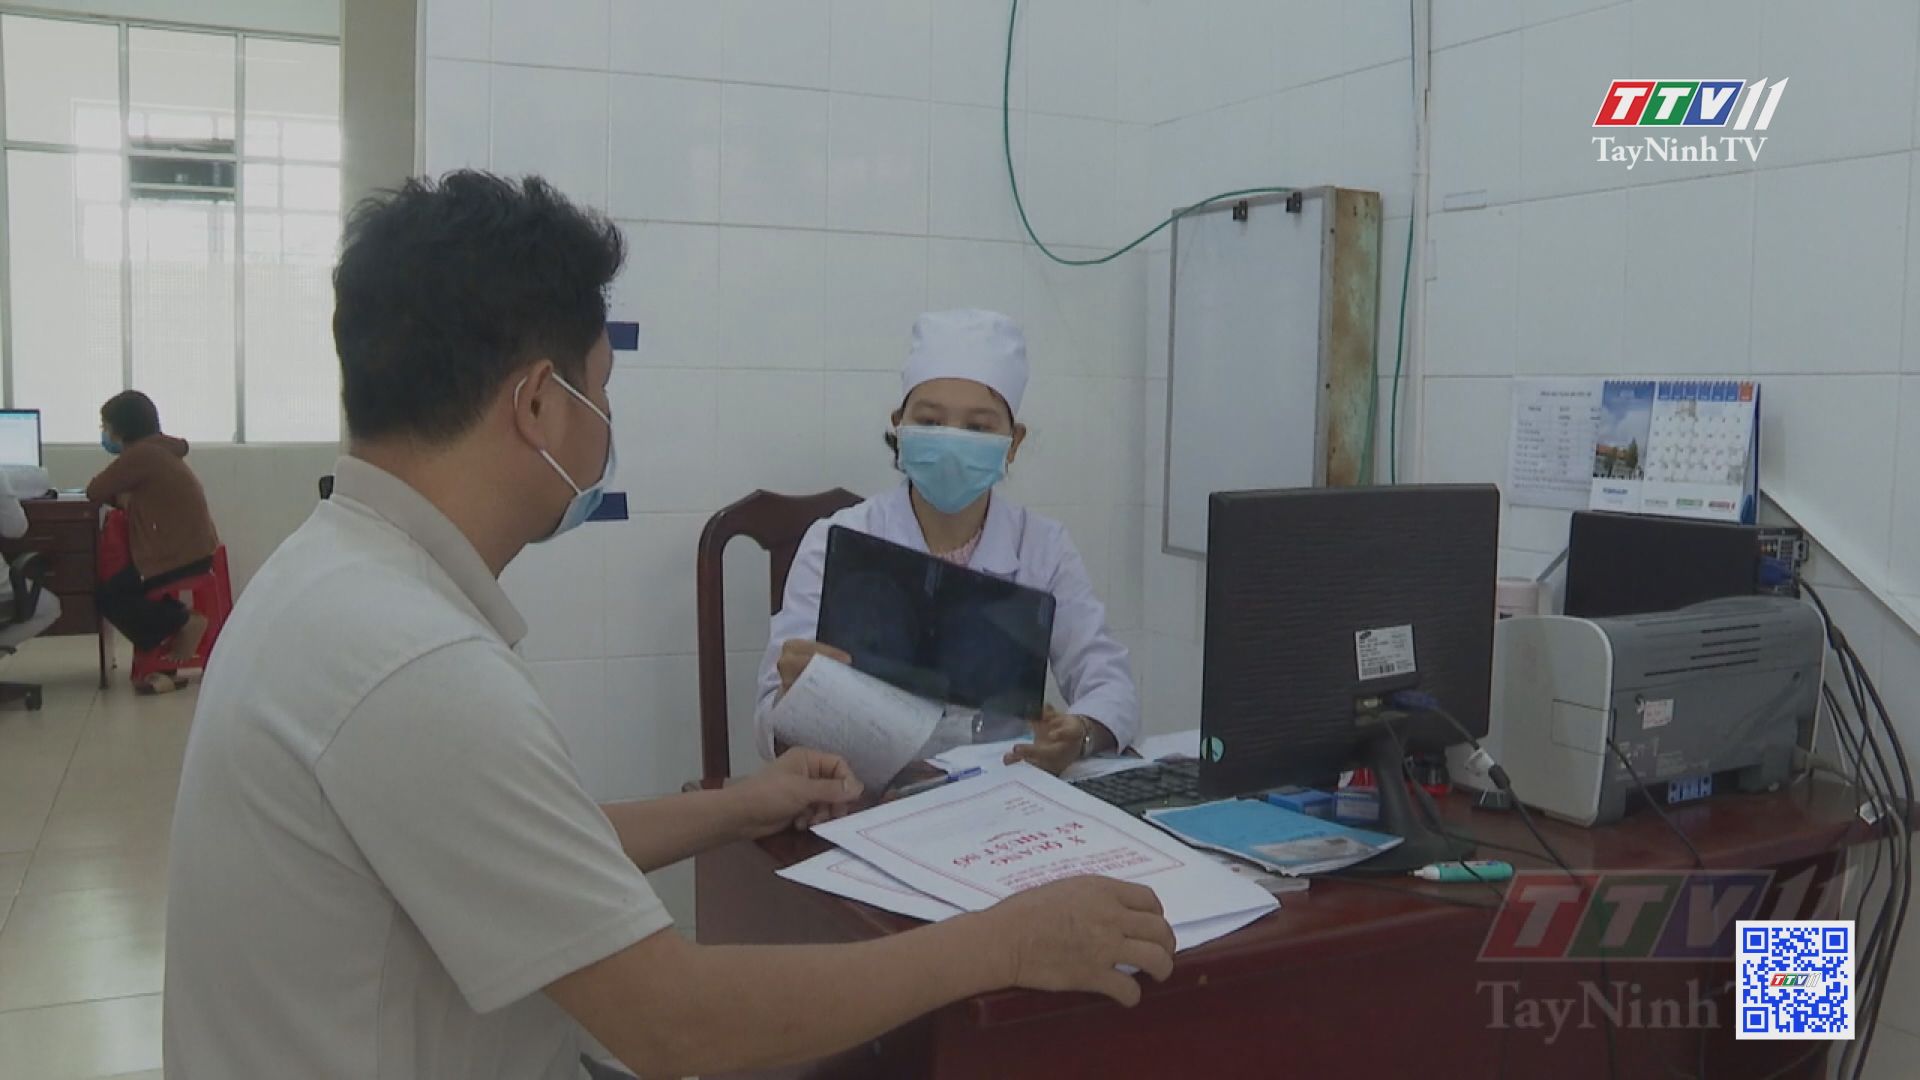 Cử tri bức xúc các vấn đề về bảo hiểm y tế, đất đai và ngành điện | TIẾNG NÓI CỬ TRI | TayNinhTV